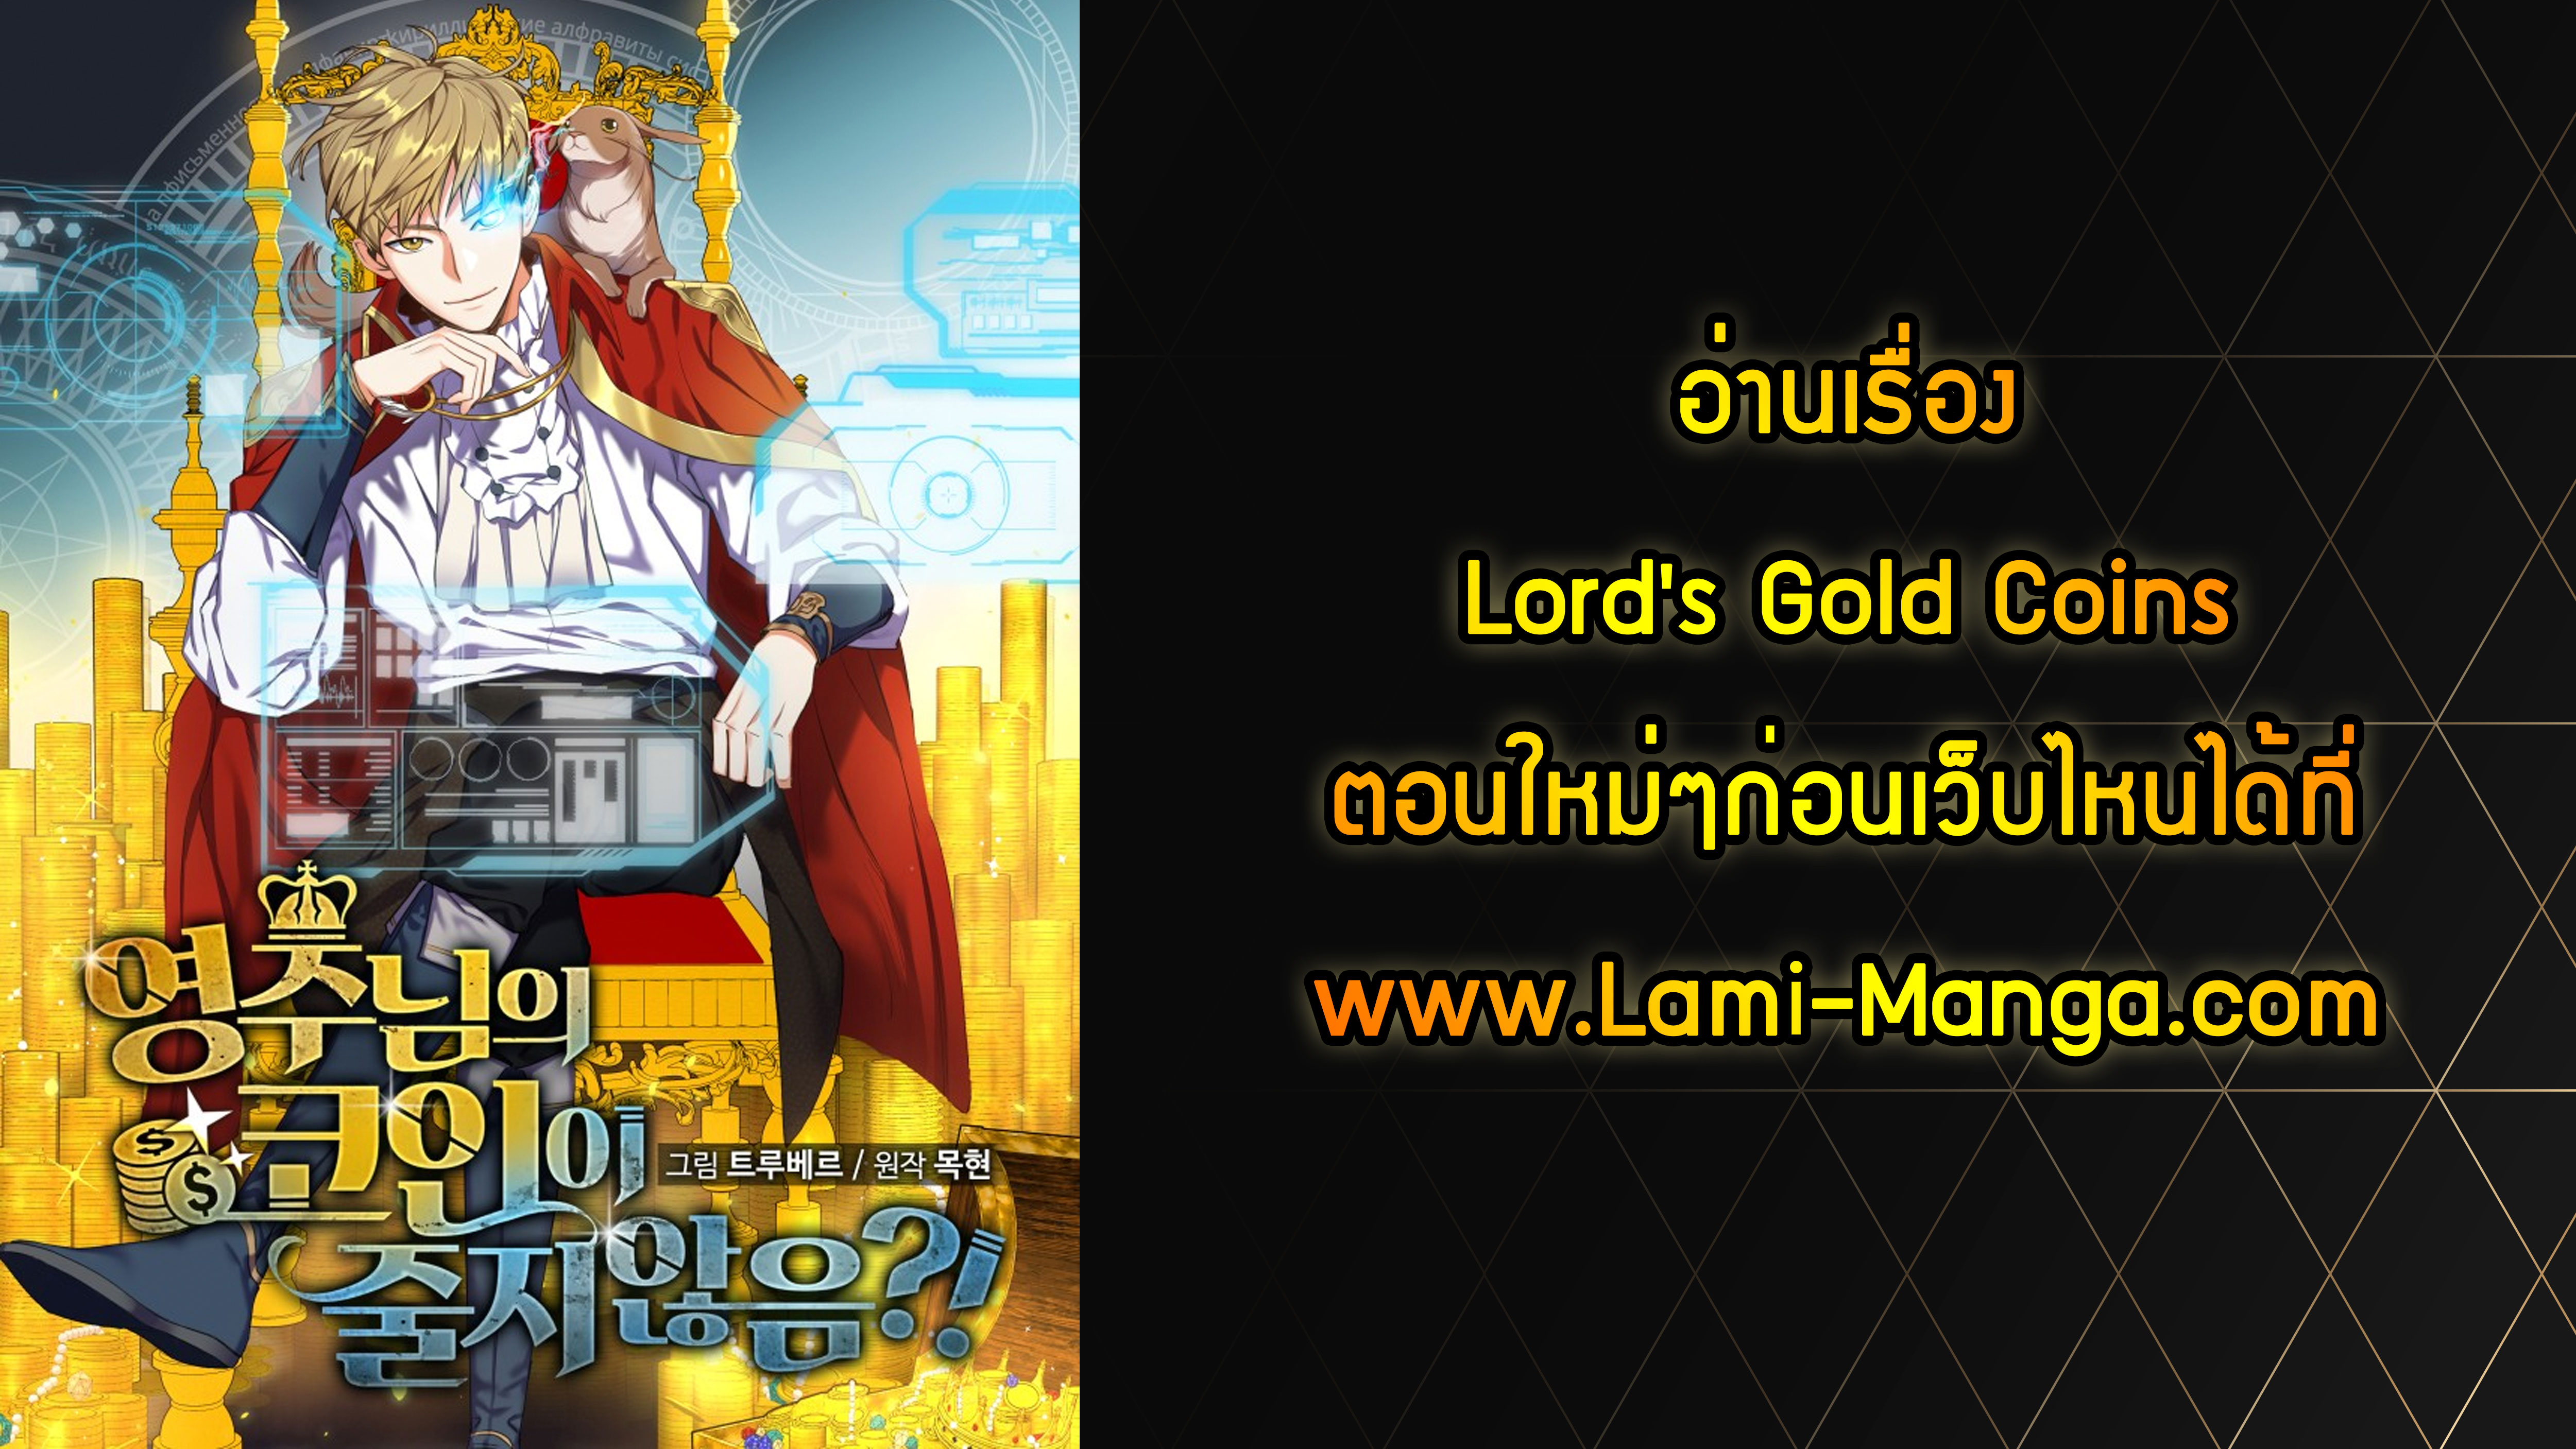 Lordโ€s Gold Coins 11 10